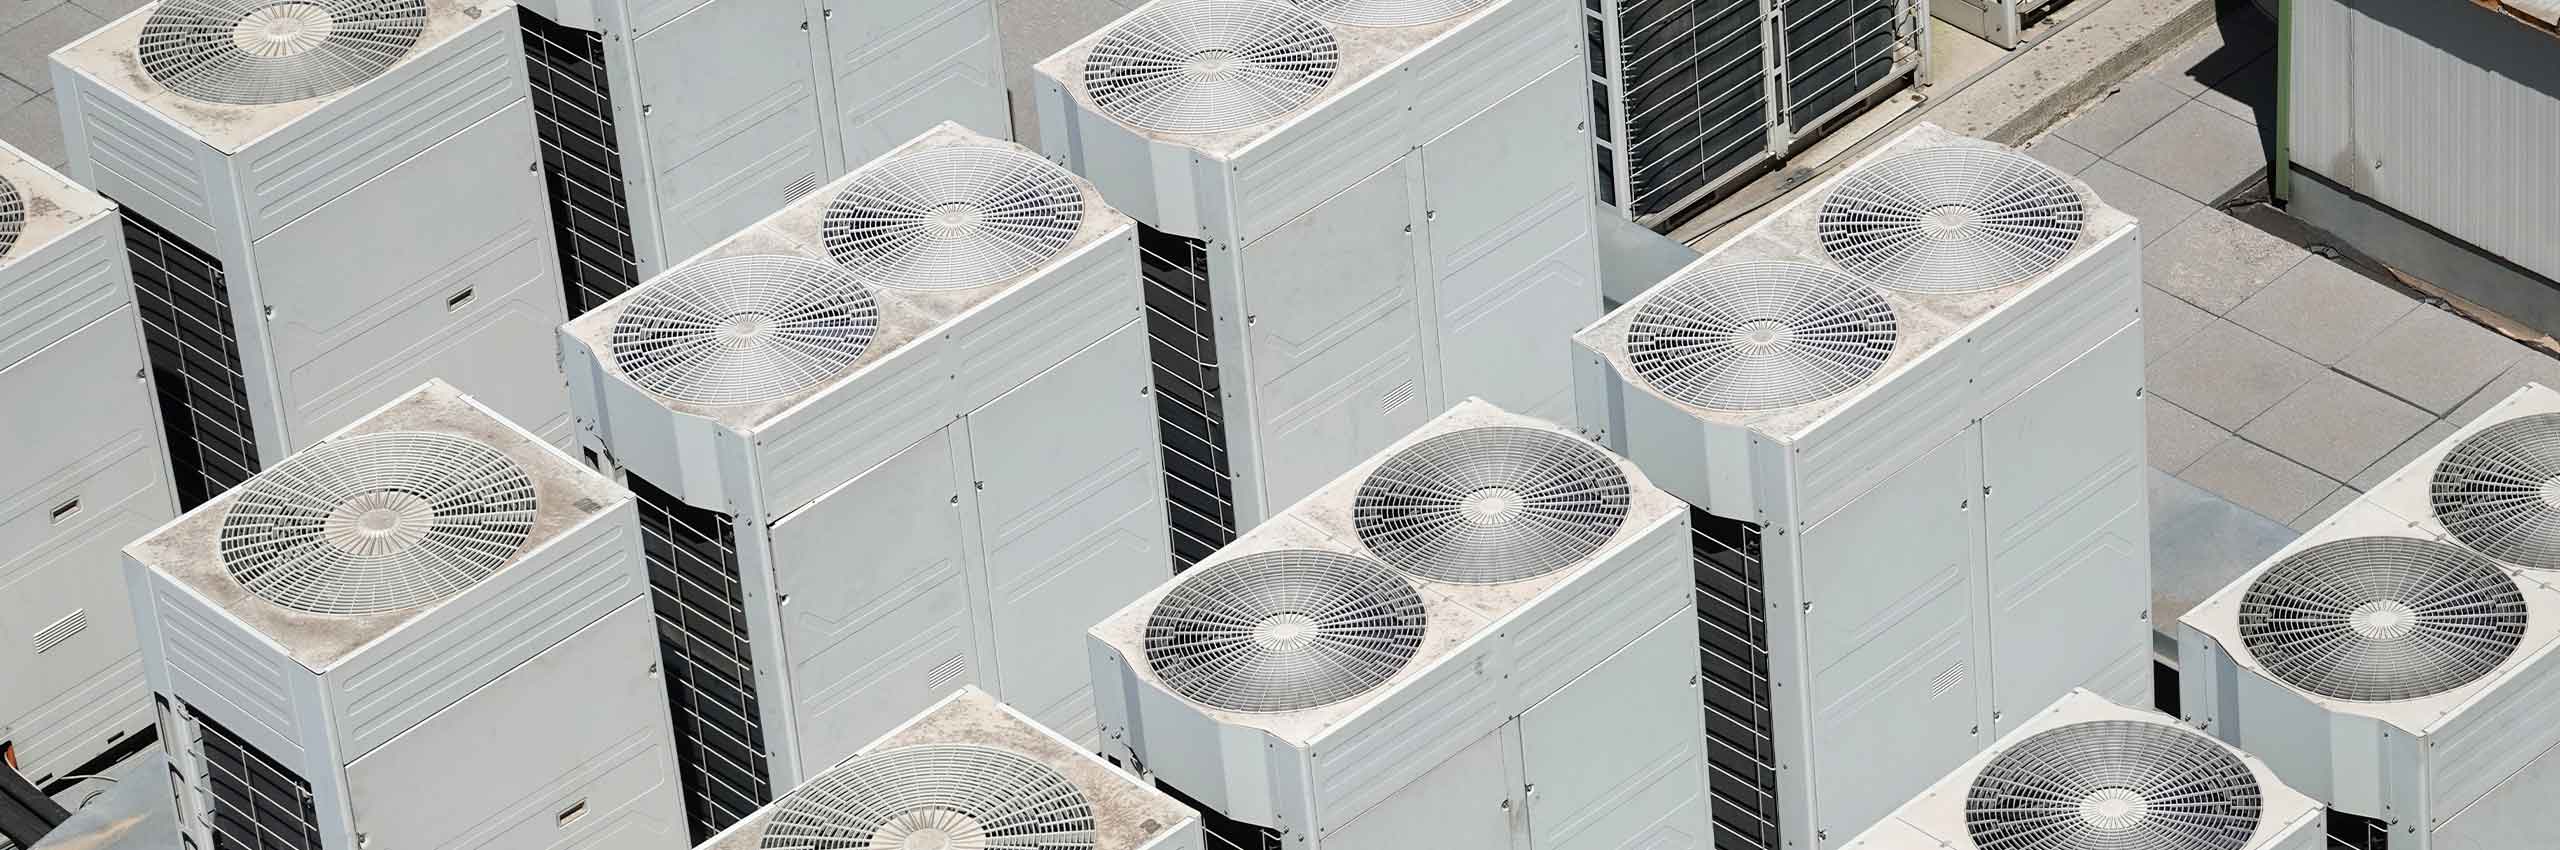 Förderung für Klimaanlagen